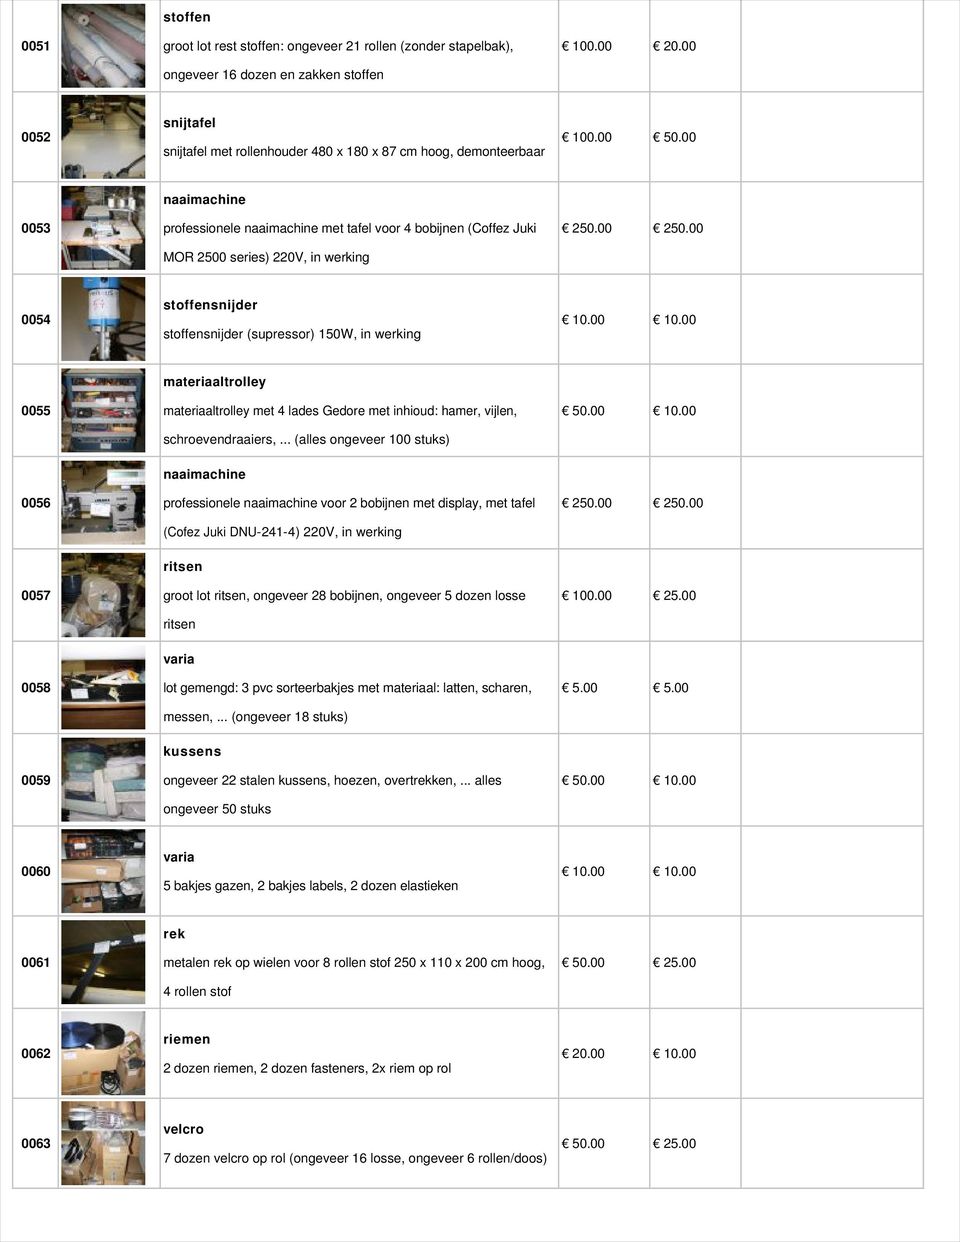 00 0053 naaimachine professionele naaimachine met tafel voor 4 bobijnen (Coffez Juki MOR 2500 series) 220V, in werking 250.00 250.